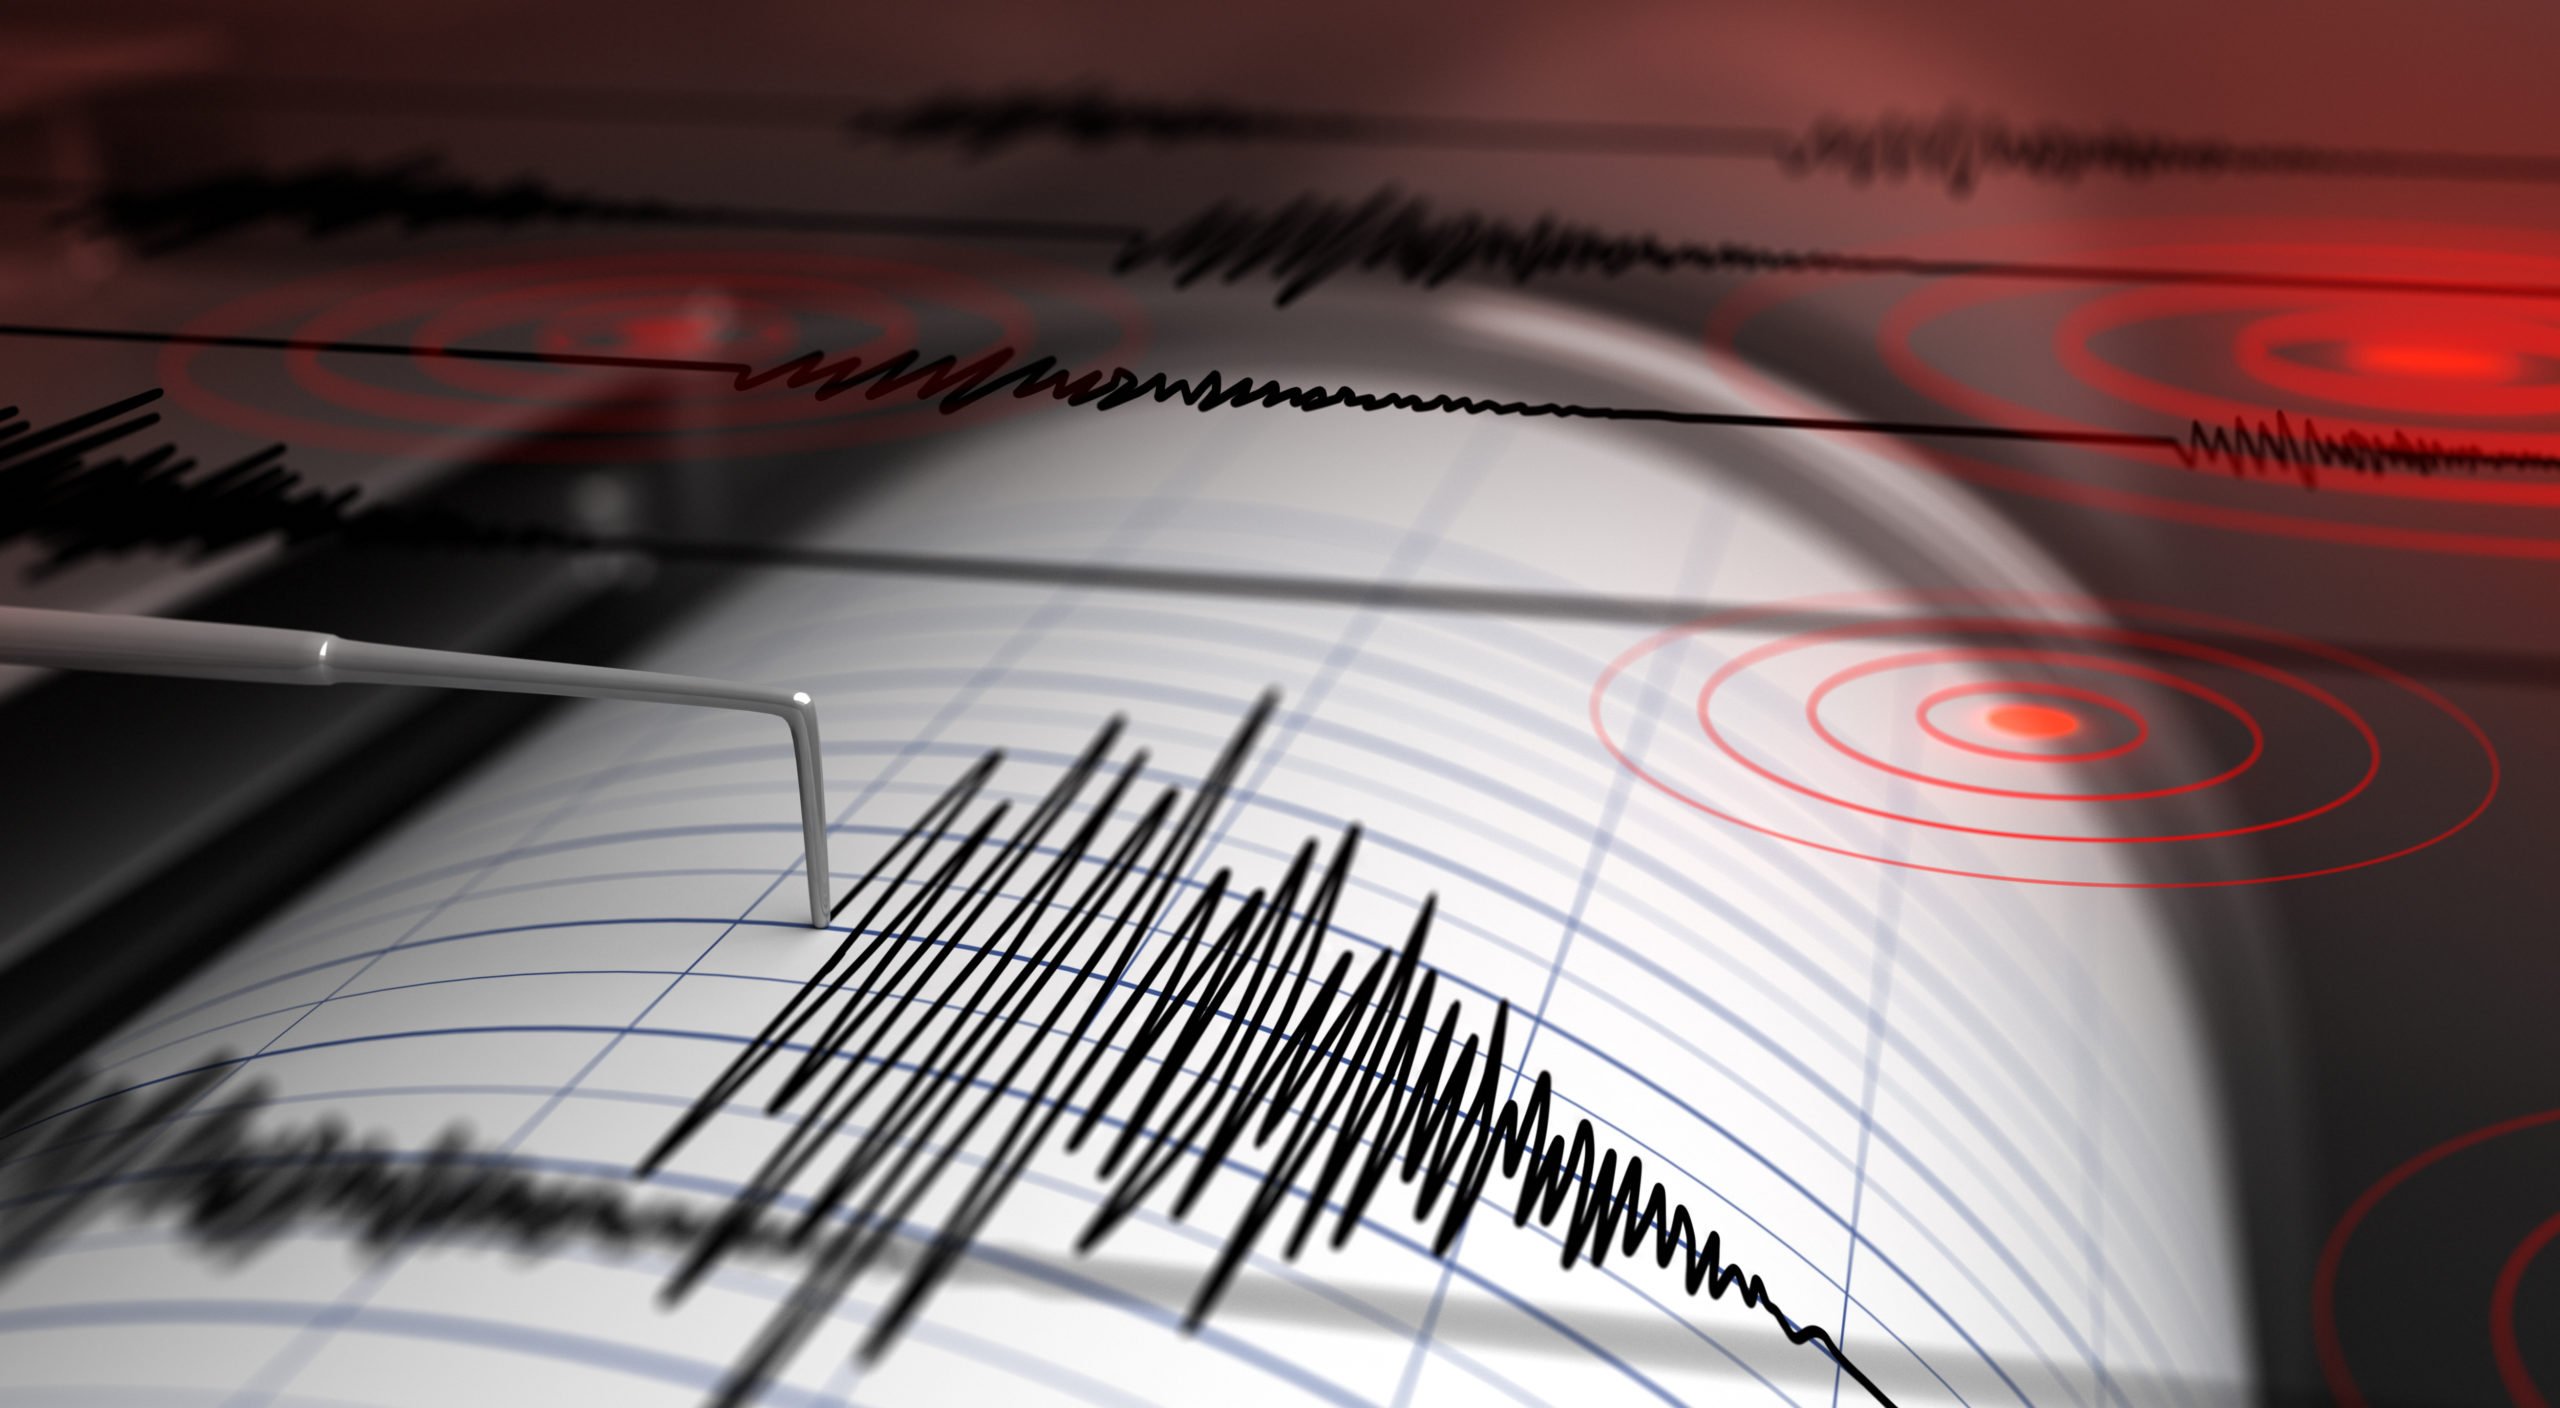 Neobișnuit: Cutremur produs în Constanța, la 5 km adâncime